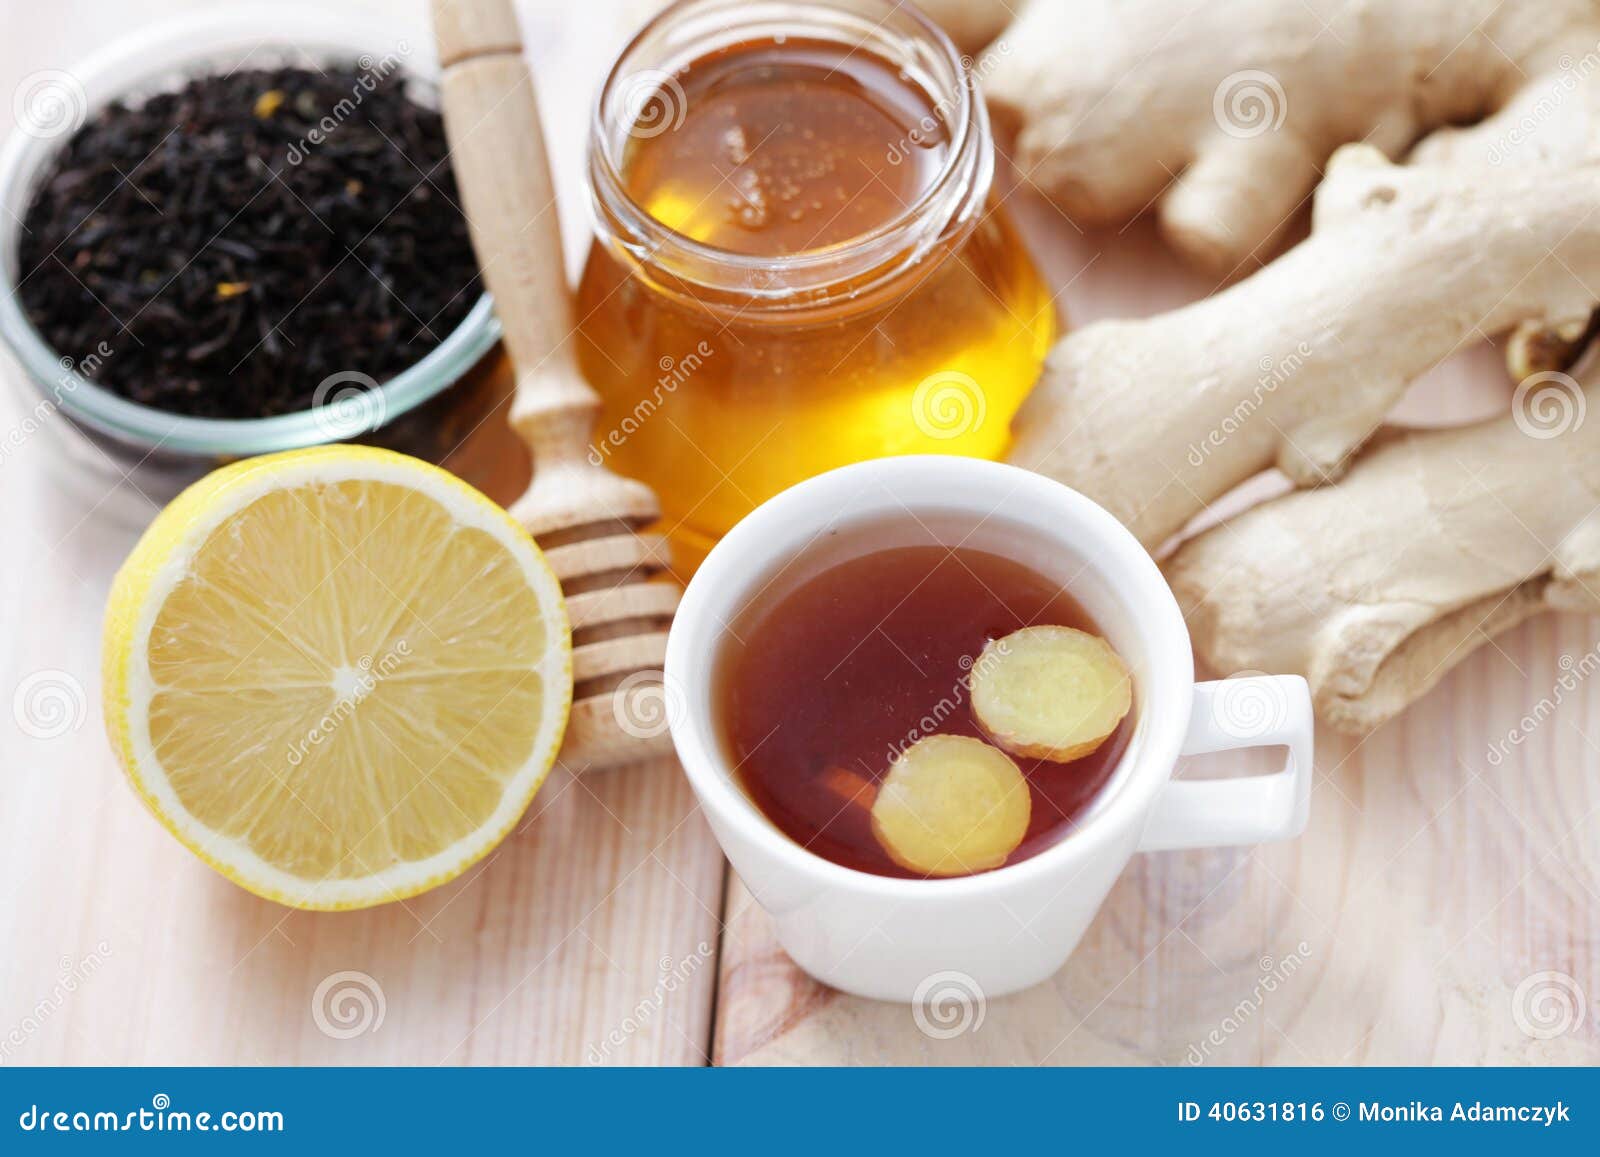 Чай с медом при простуде. Имбирный чай. Чай с медом. Чай с имбирем. Чай с лимоном и имбирем.